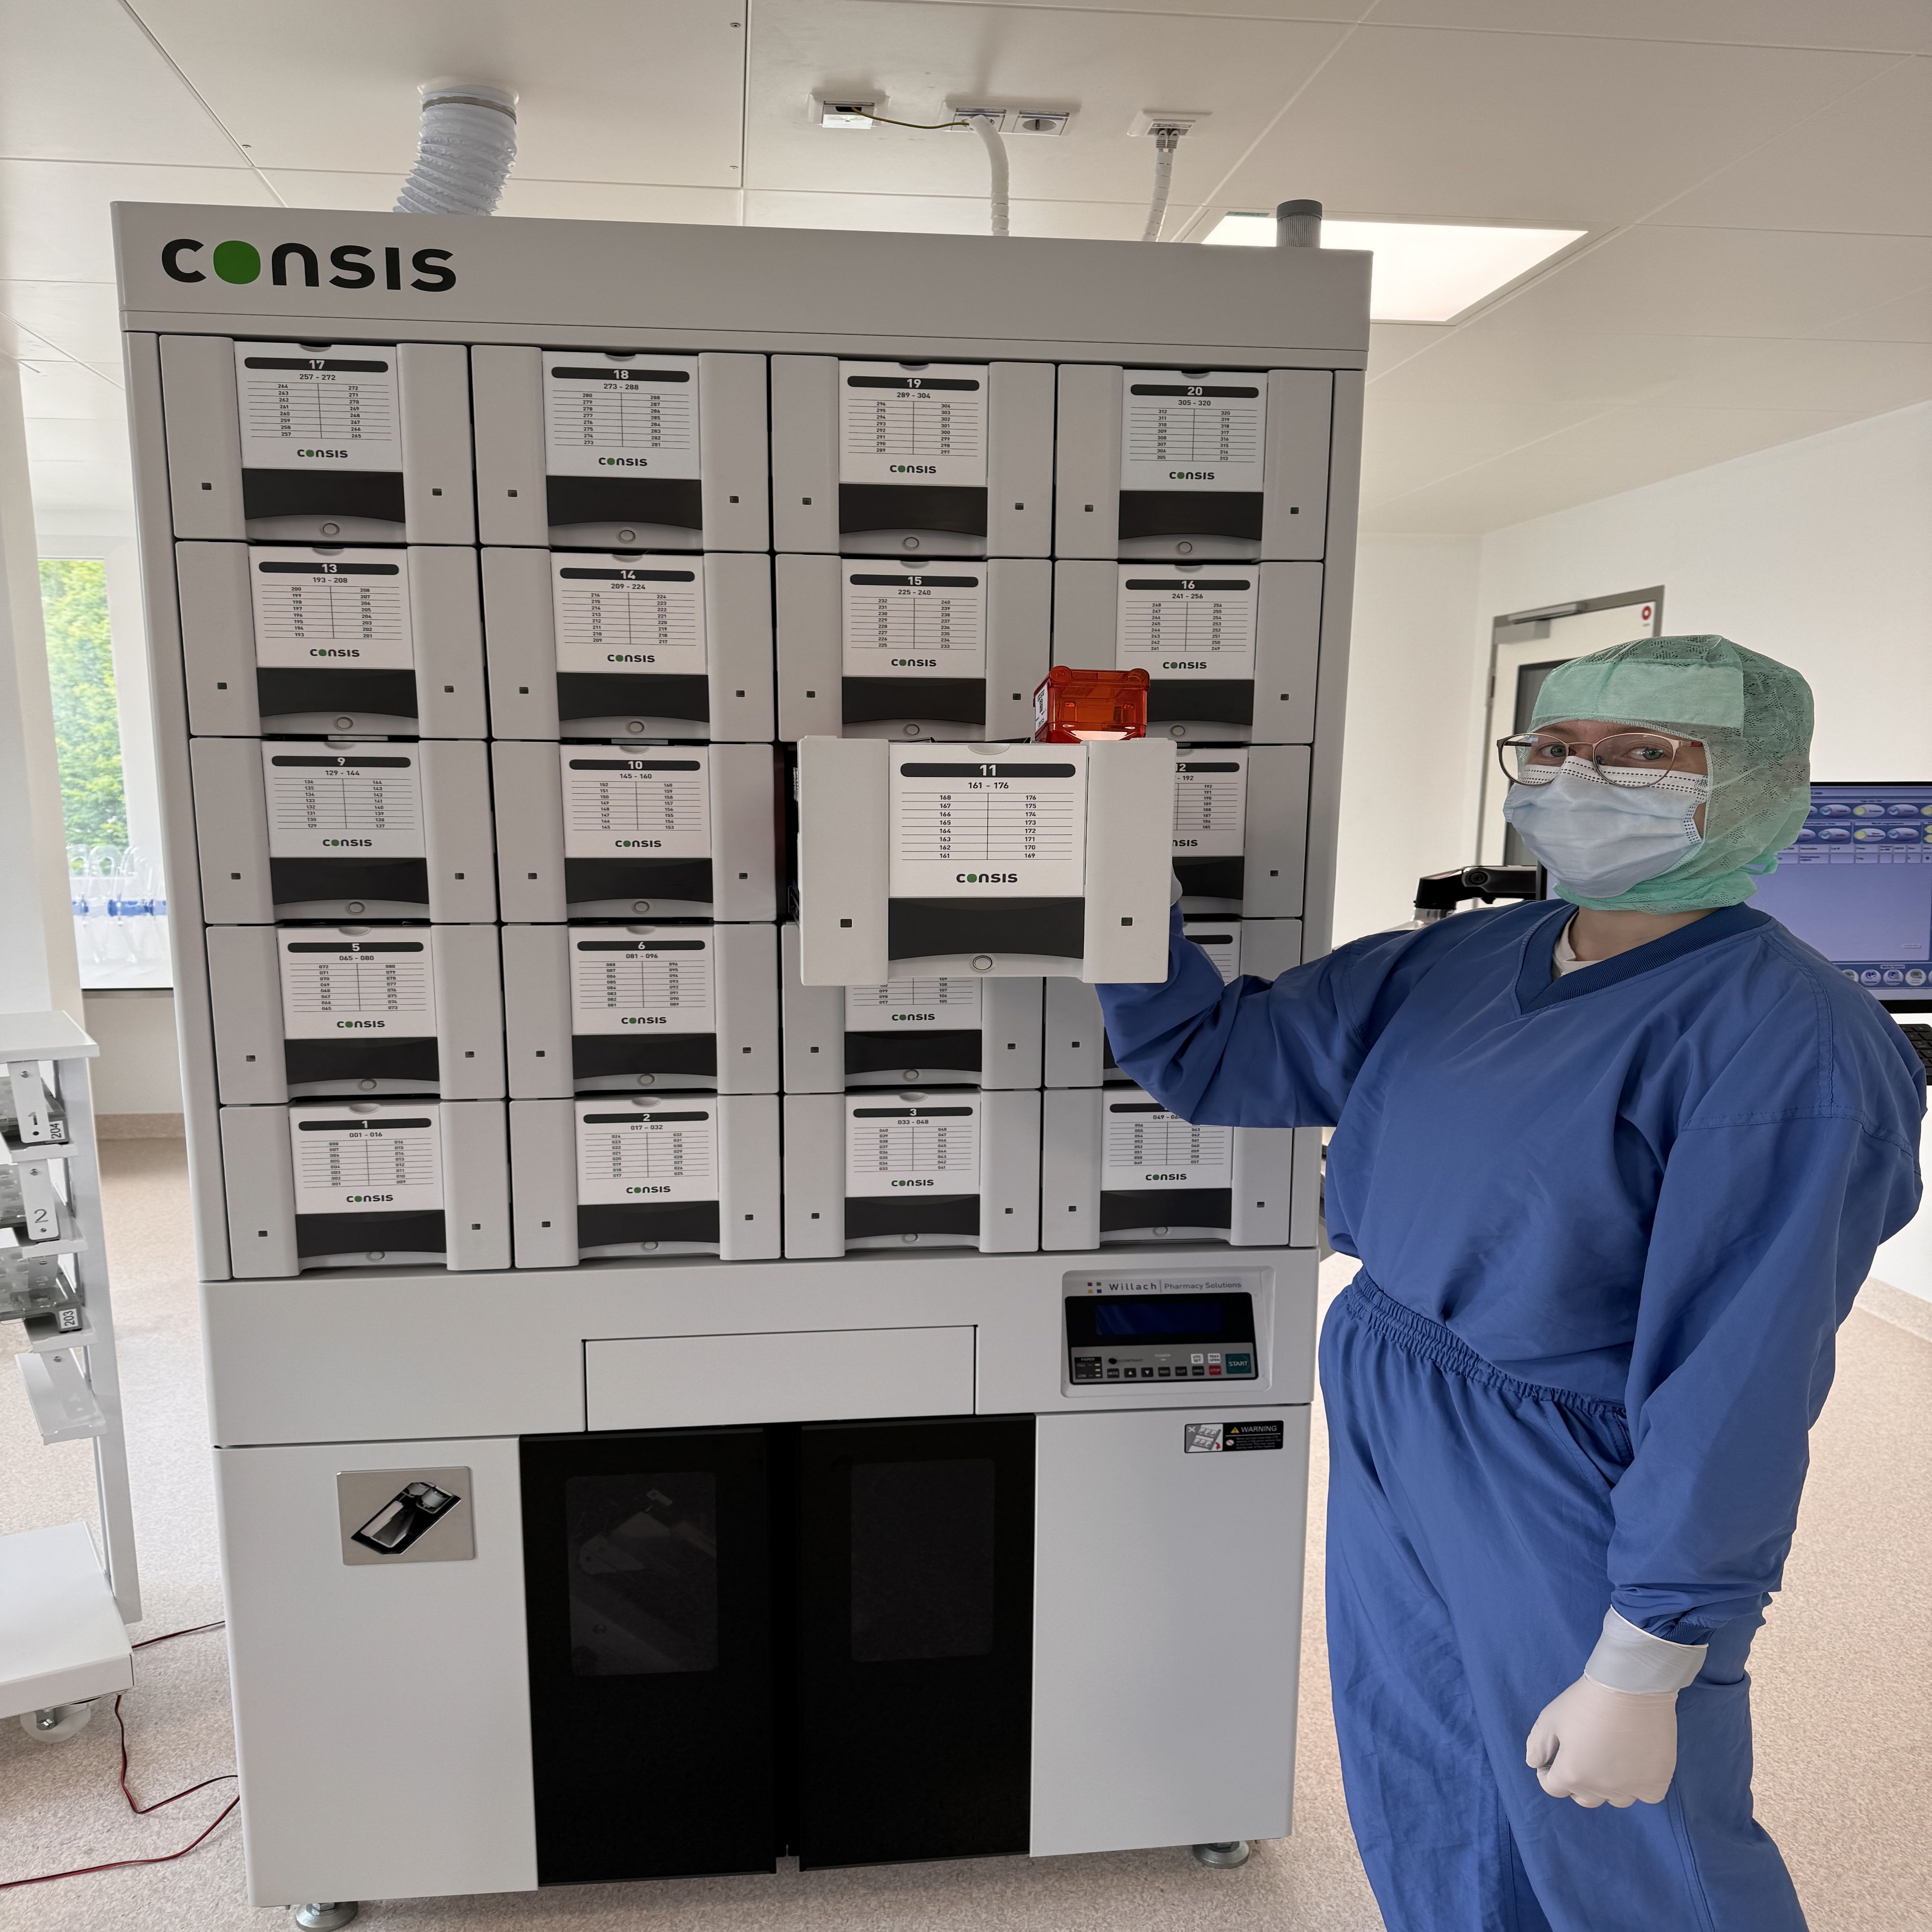 Das UKW ist die erste Klinik in Unterfranken mit dem Unit-Dose-System. Die Medikamente werden dabei hygienisch und sicher automatisiert in kleine Tütchen verpackt.